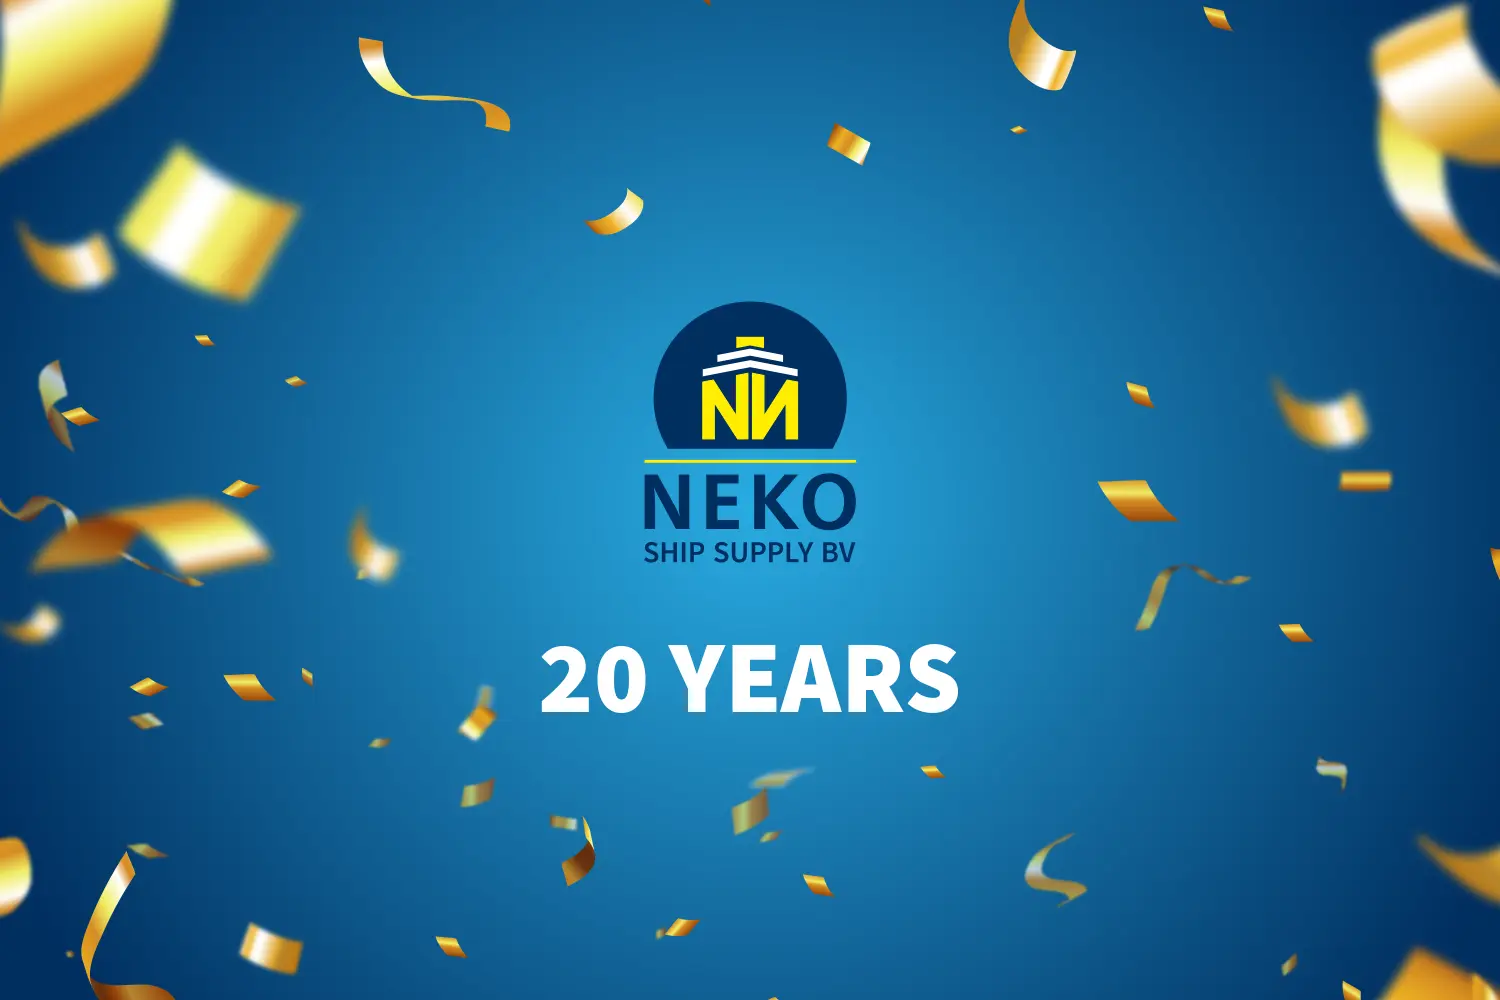 Neko 20 Years visual with logo